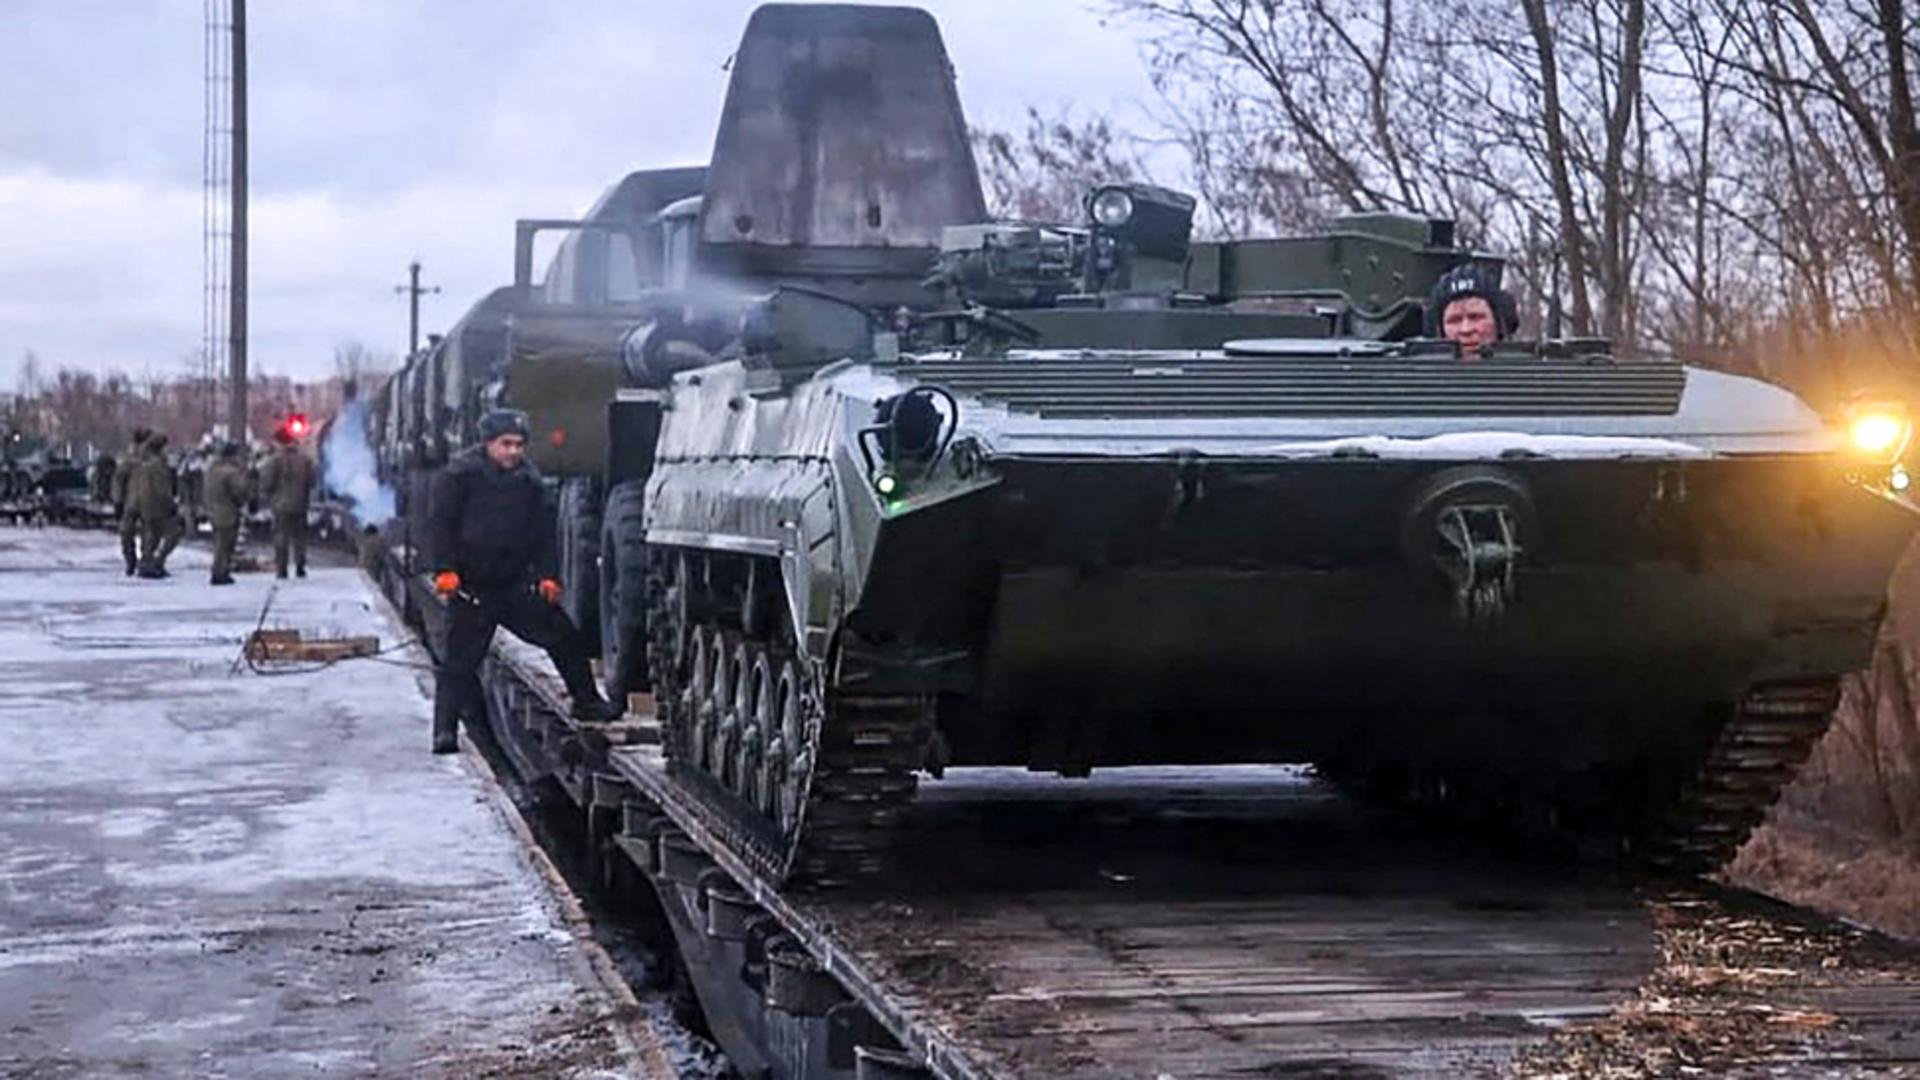  Criza ucraineană – Pericolul unei invazii ruseşti se menţine. 20 februarie este data esenţială în acest conflict